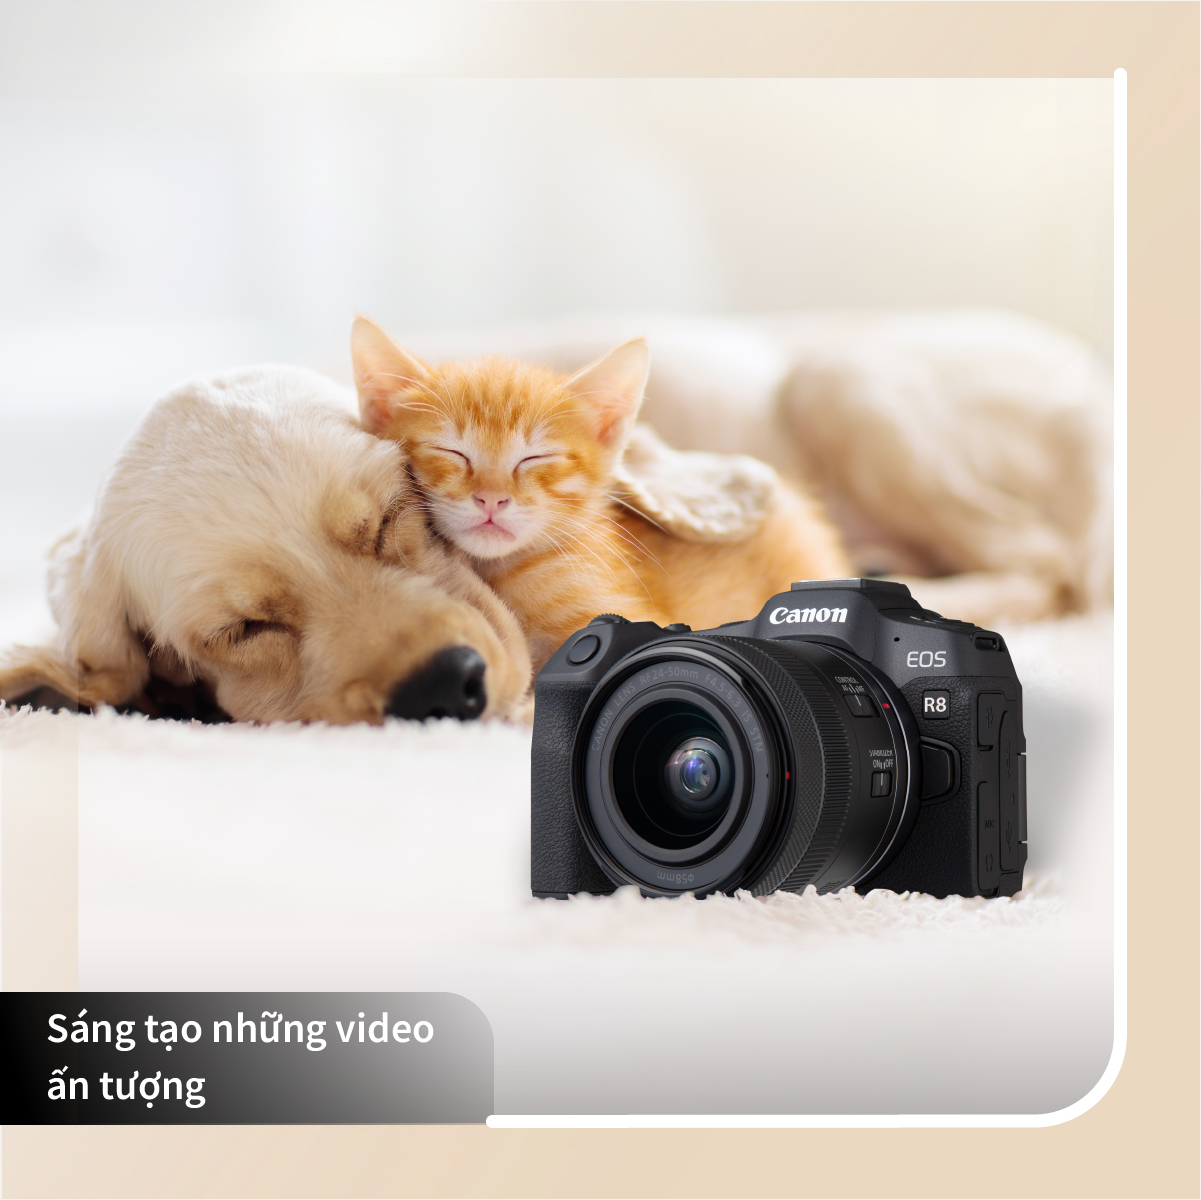 Sáng tạo nội dung video đỉnh cao với Canon EOS R8 - Ảnh 4.